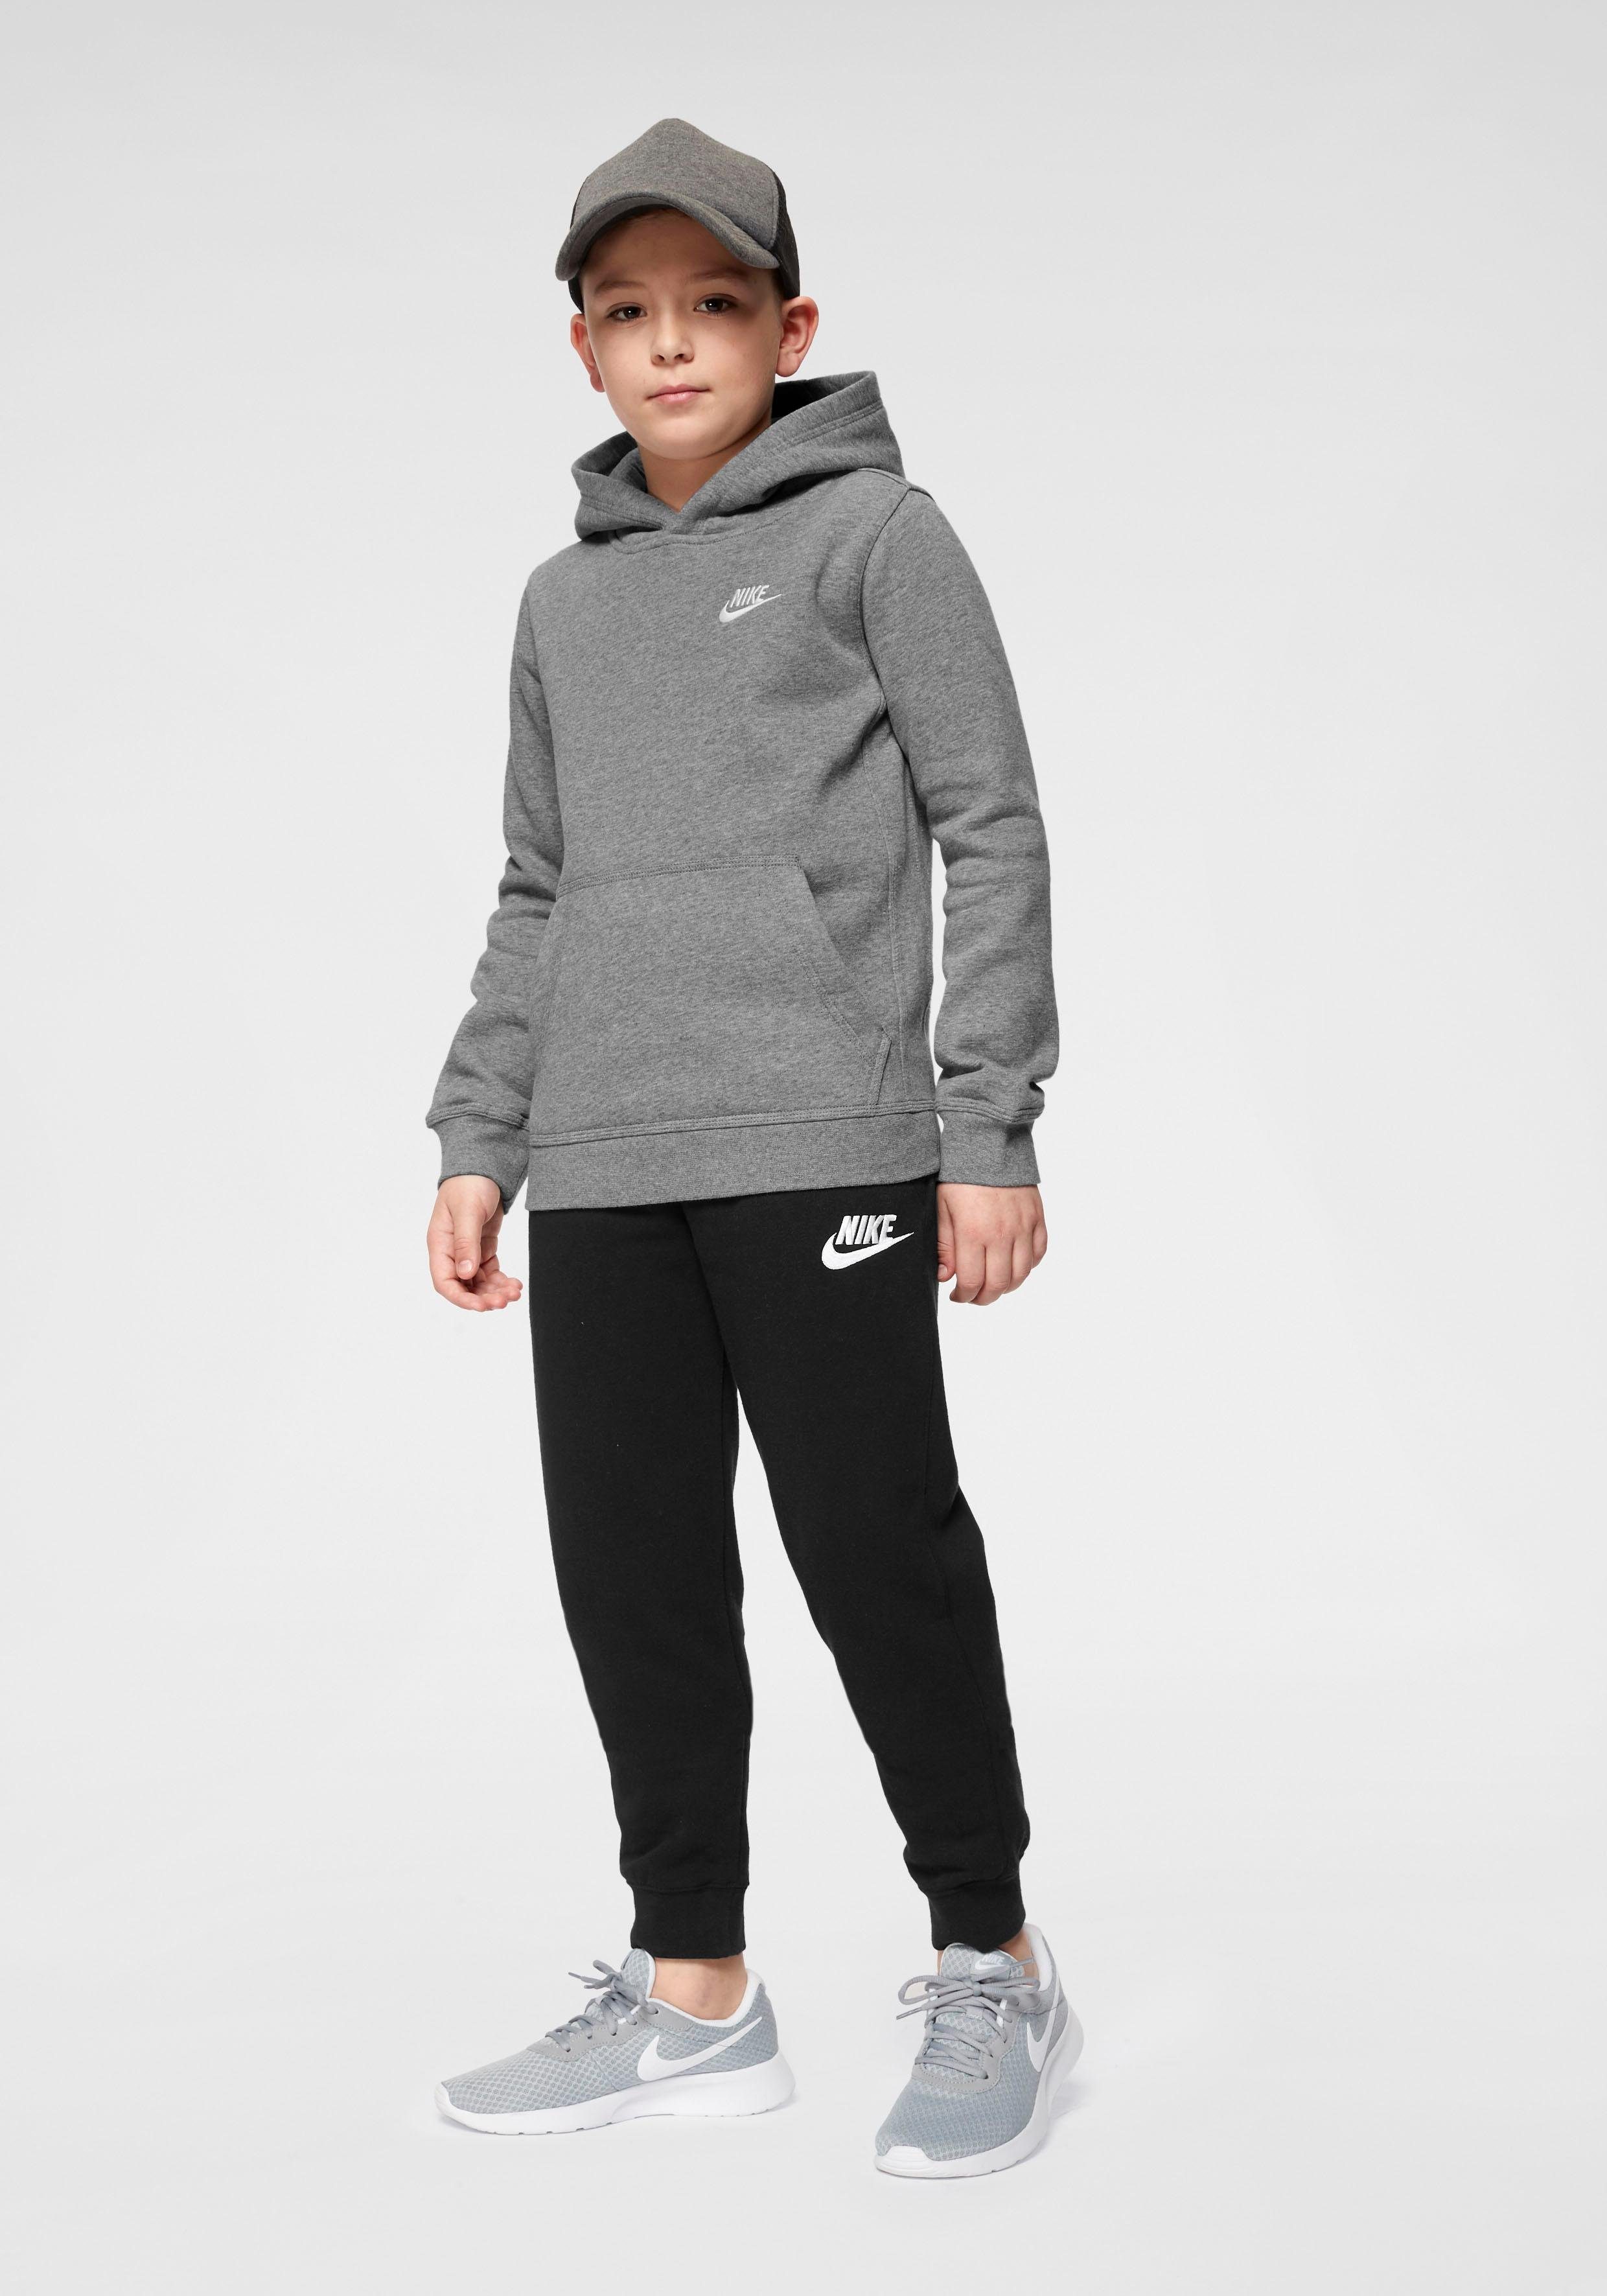 Nike Sportswear Kapuzensweatshirt Club Hoodie Kids' Pullover grau-meliert Big